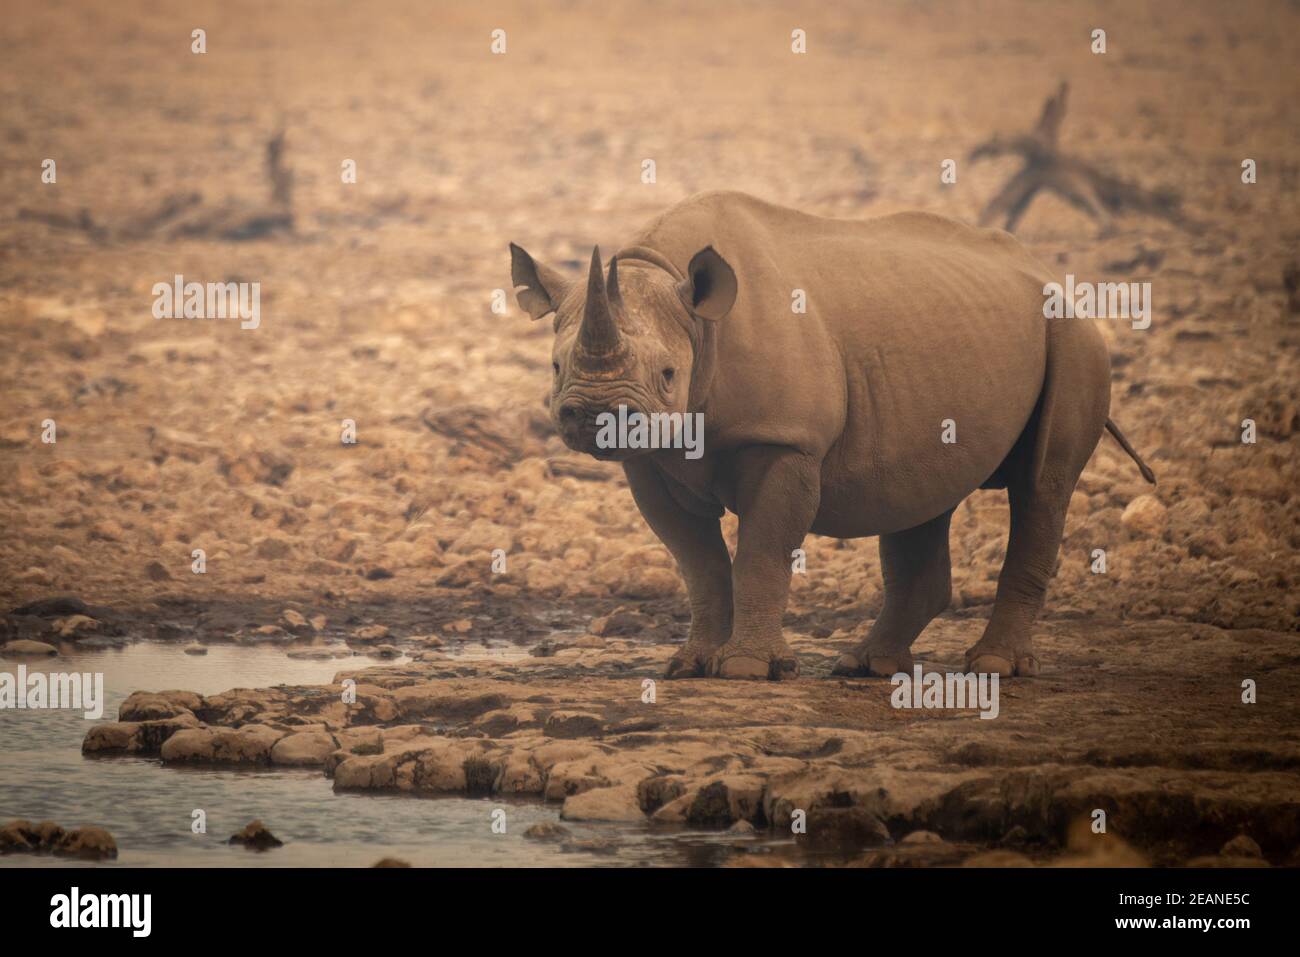 El rinoceronte negro se encuentra entre rocas por un agujero de agua Foto de stock